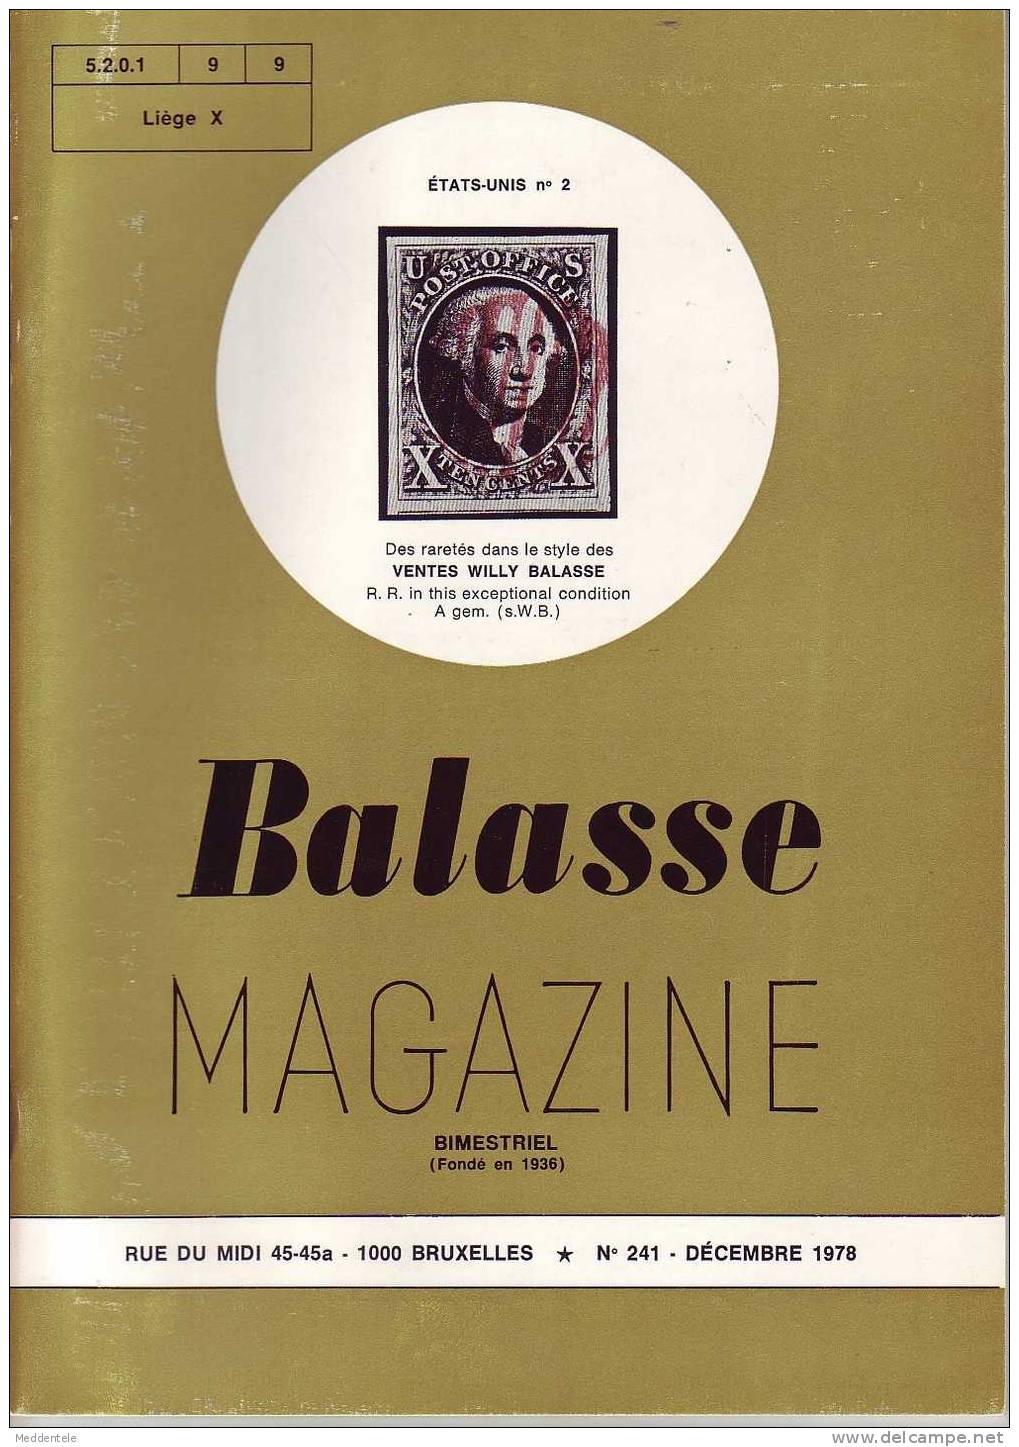 BALASSE MAGAZINE N° 241 - Français (àpd. 1941)